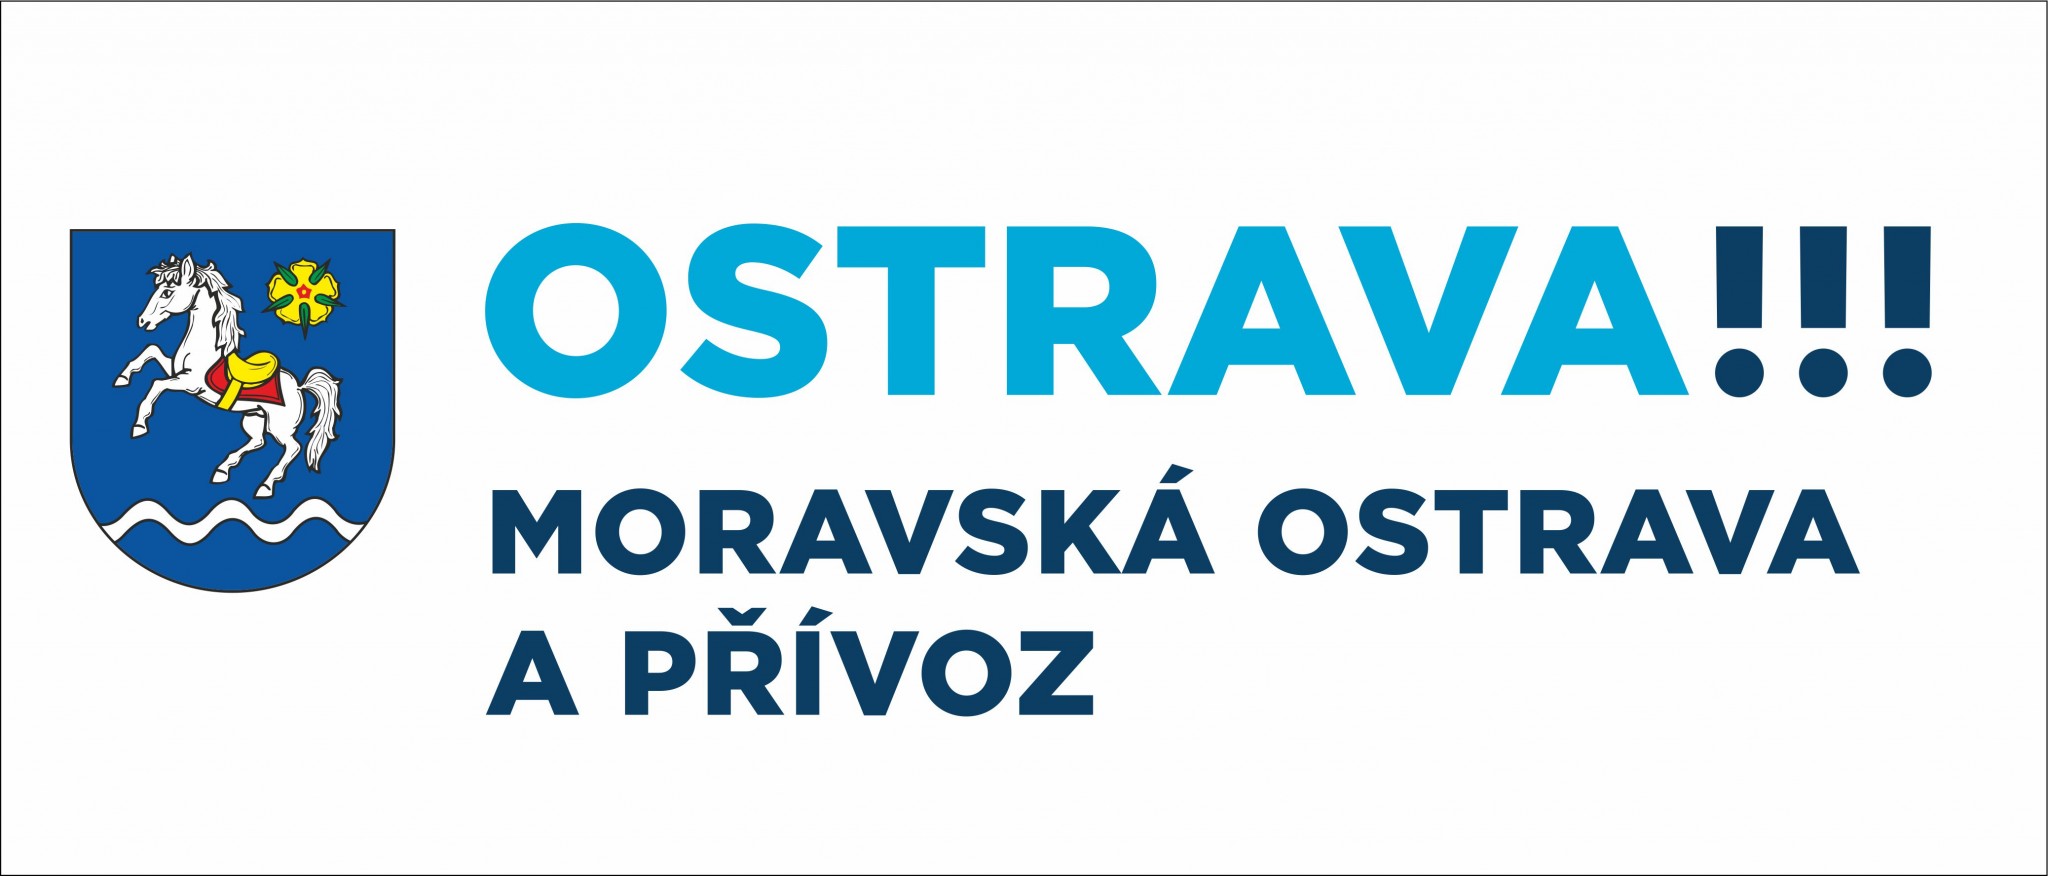 STUDIO FATIMA PODPORUJE MĚSTSKÝ OBVOD MORAVSKÁ OSTRAVA A PŘÍVOZ! | Novinky  | FATIMA Dance a Fitness, Ostrava